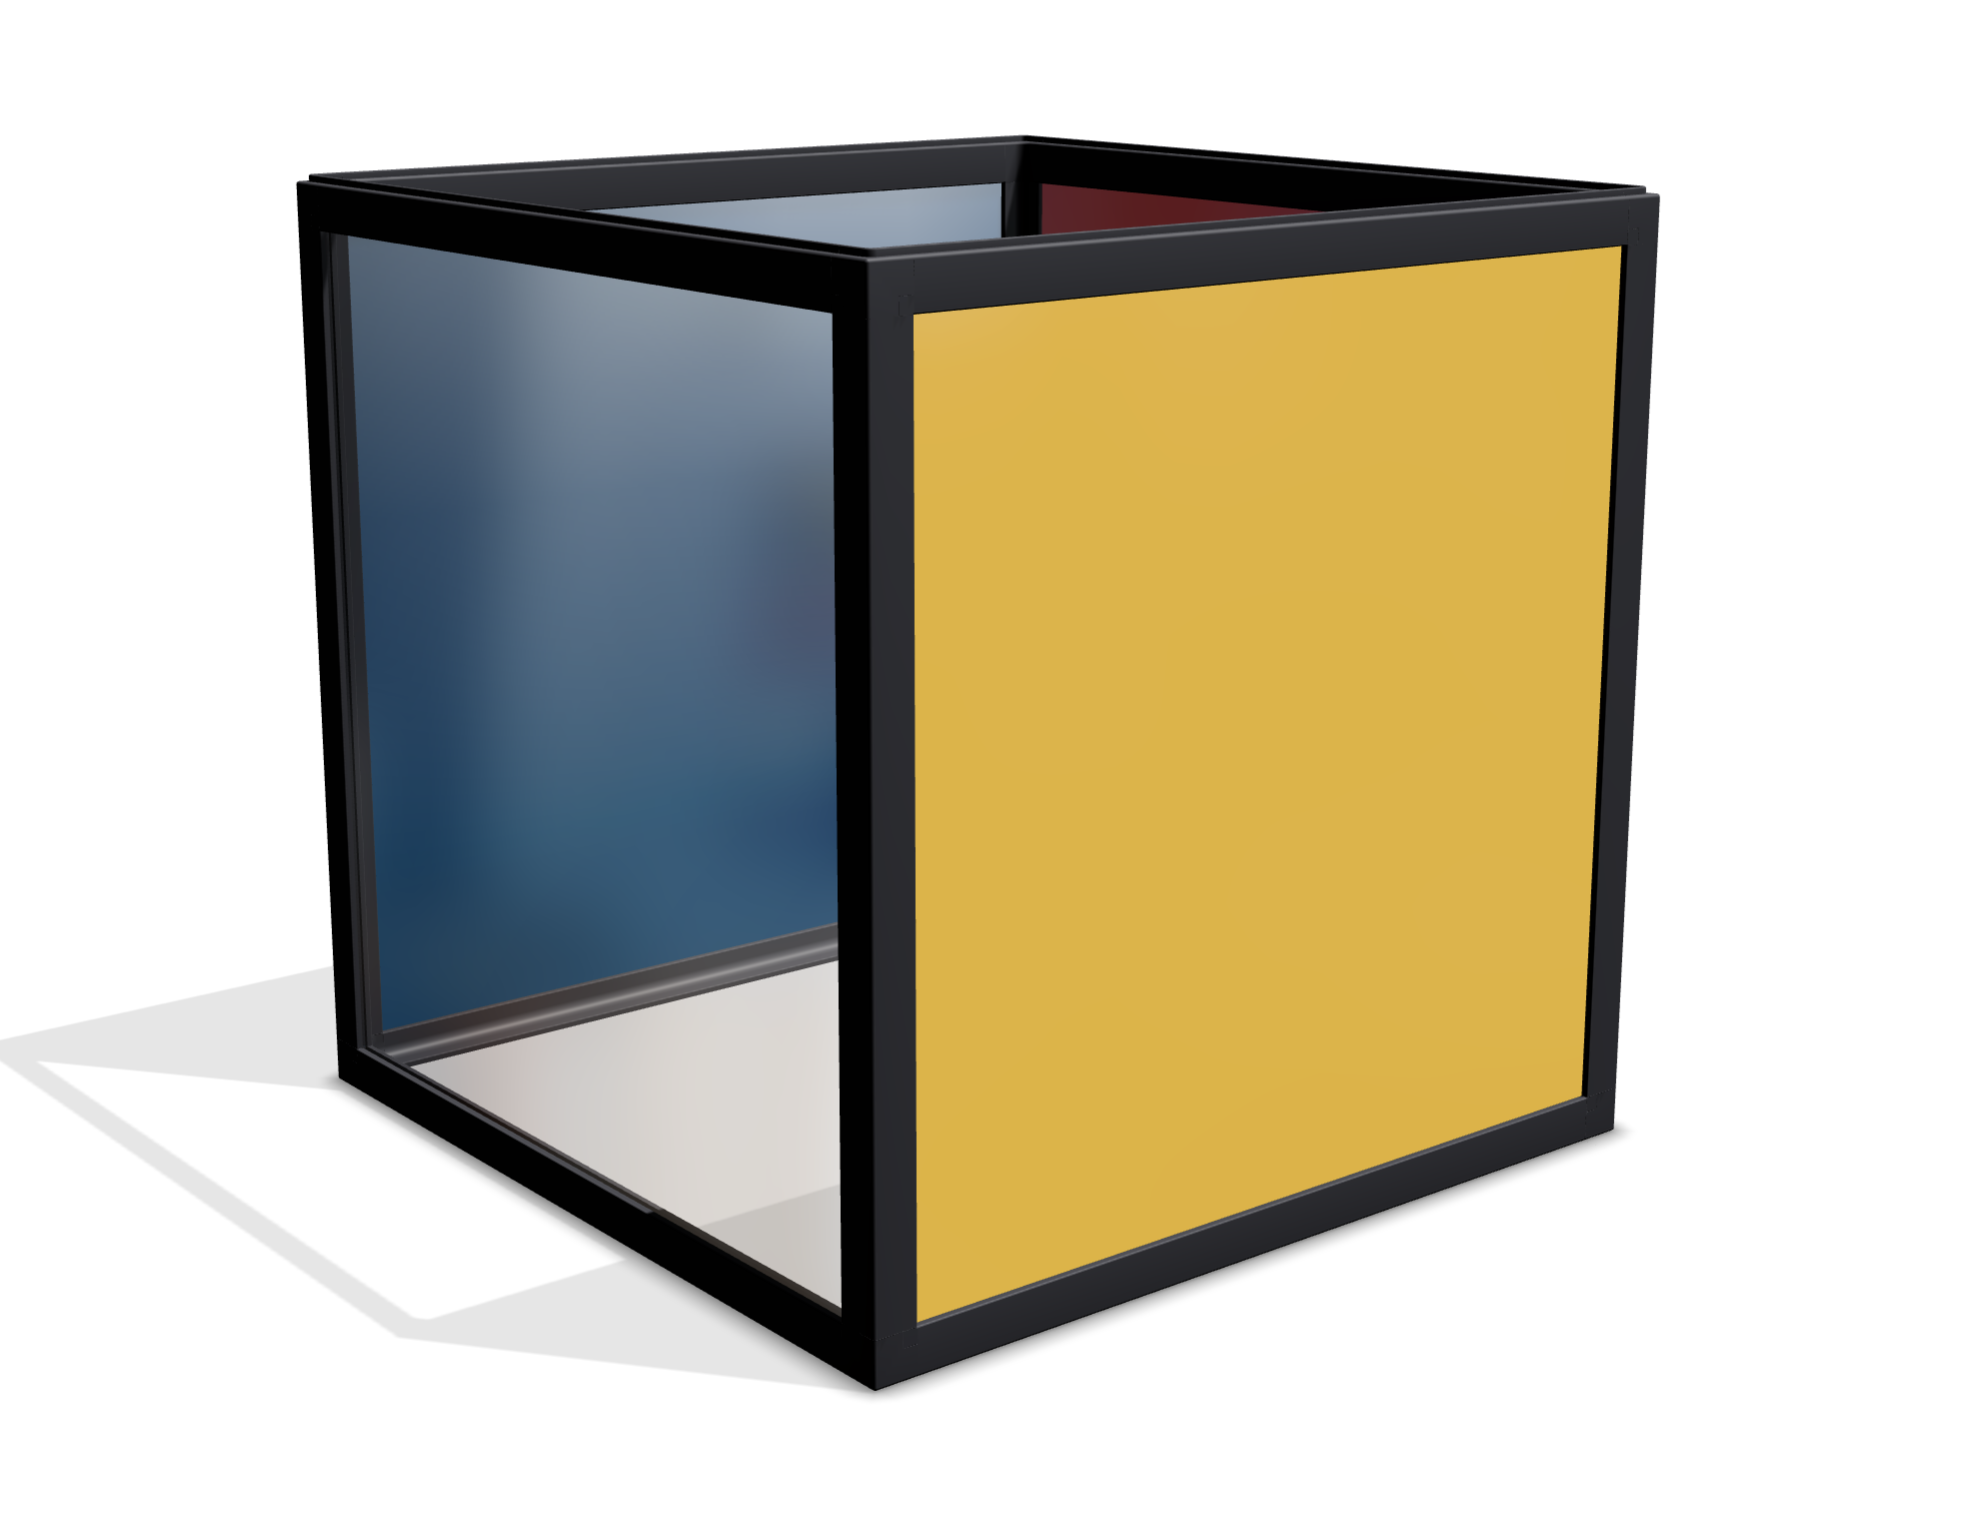 Würfelförmige boxula ohne Deckel mit Rahmenfarbe Rich Black und Seitenwänden im Pop-Art-Sti. Je eine Seite ist blau, rot, gelb, transparent. Der Boden ist weiß.